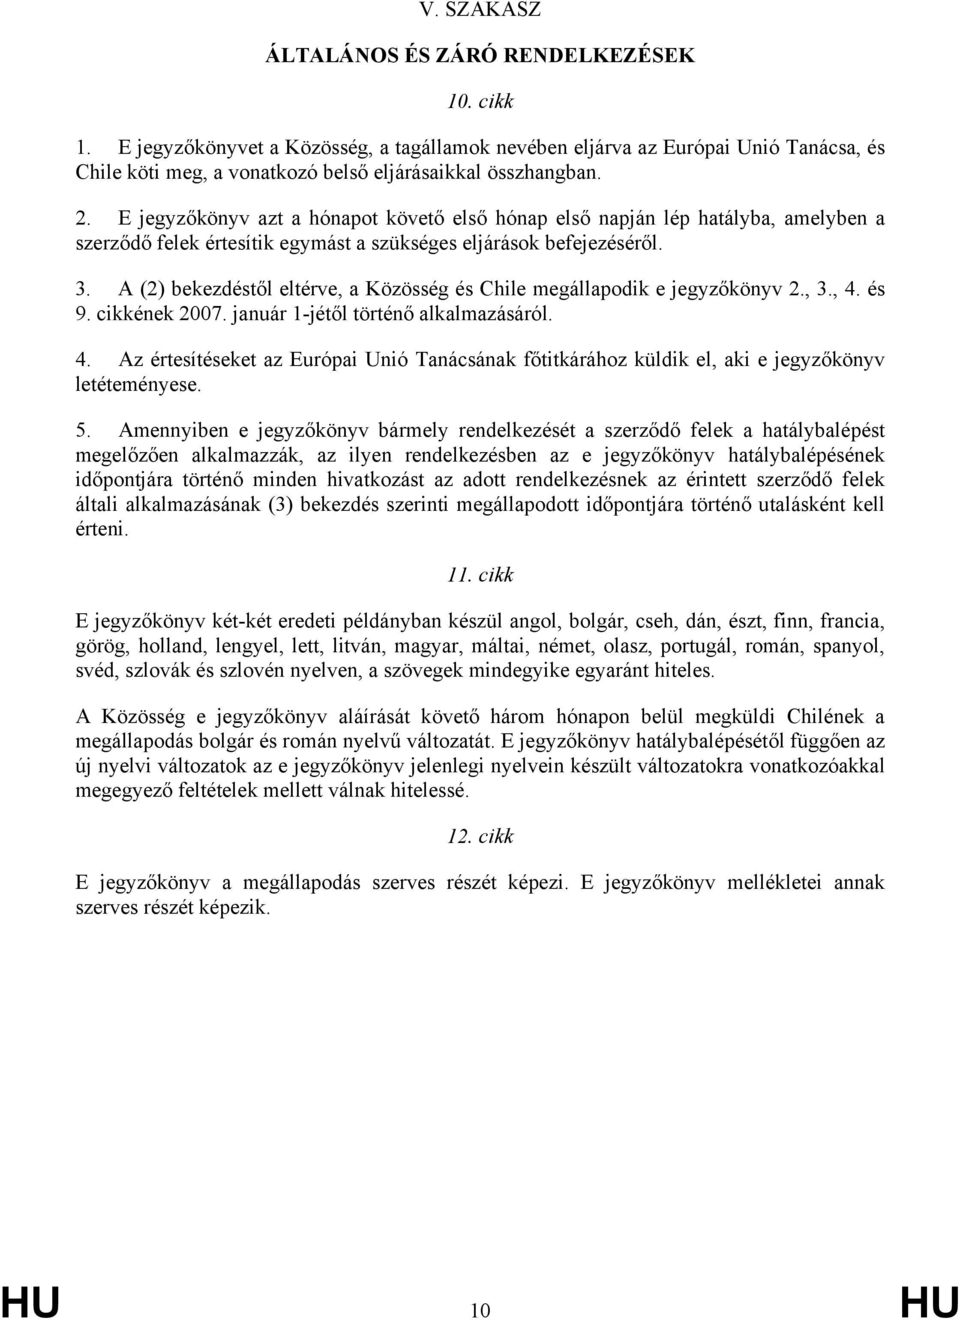 A (2) bekezdéstől eltérve, a Közösség és Chile megállapodik e jegyzőkönyv 2., 3., 4. és 9. cikkének 2007. január 1-jétől történő alkalmazásáról. 4. Az értesítéseket az Európai Unió Tanácsának főtitkárához küldik el, aki e jegyzőkönyv letéteményese.